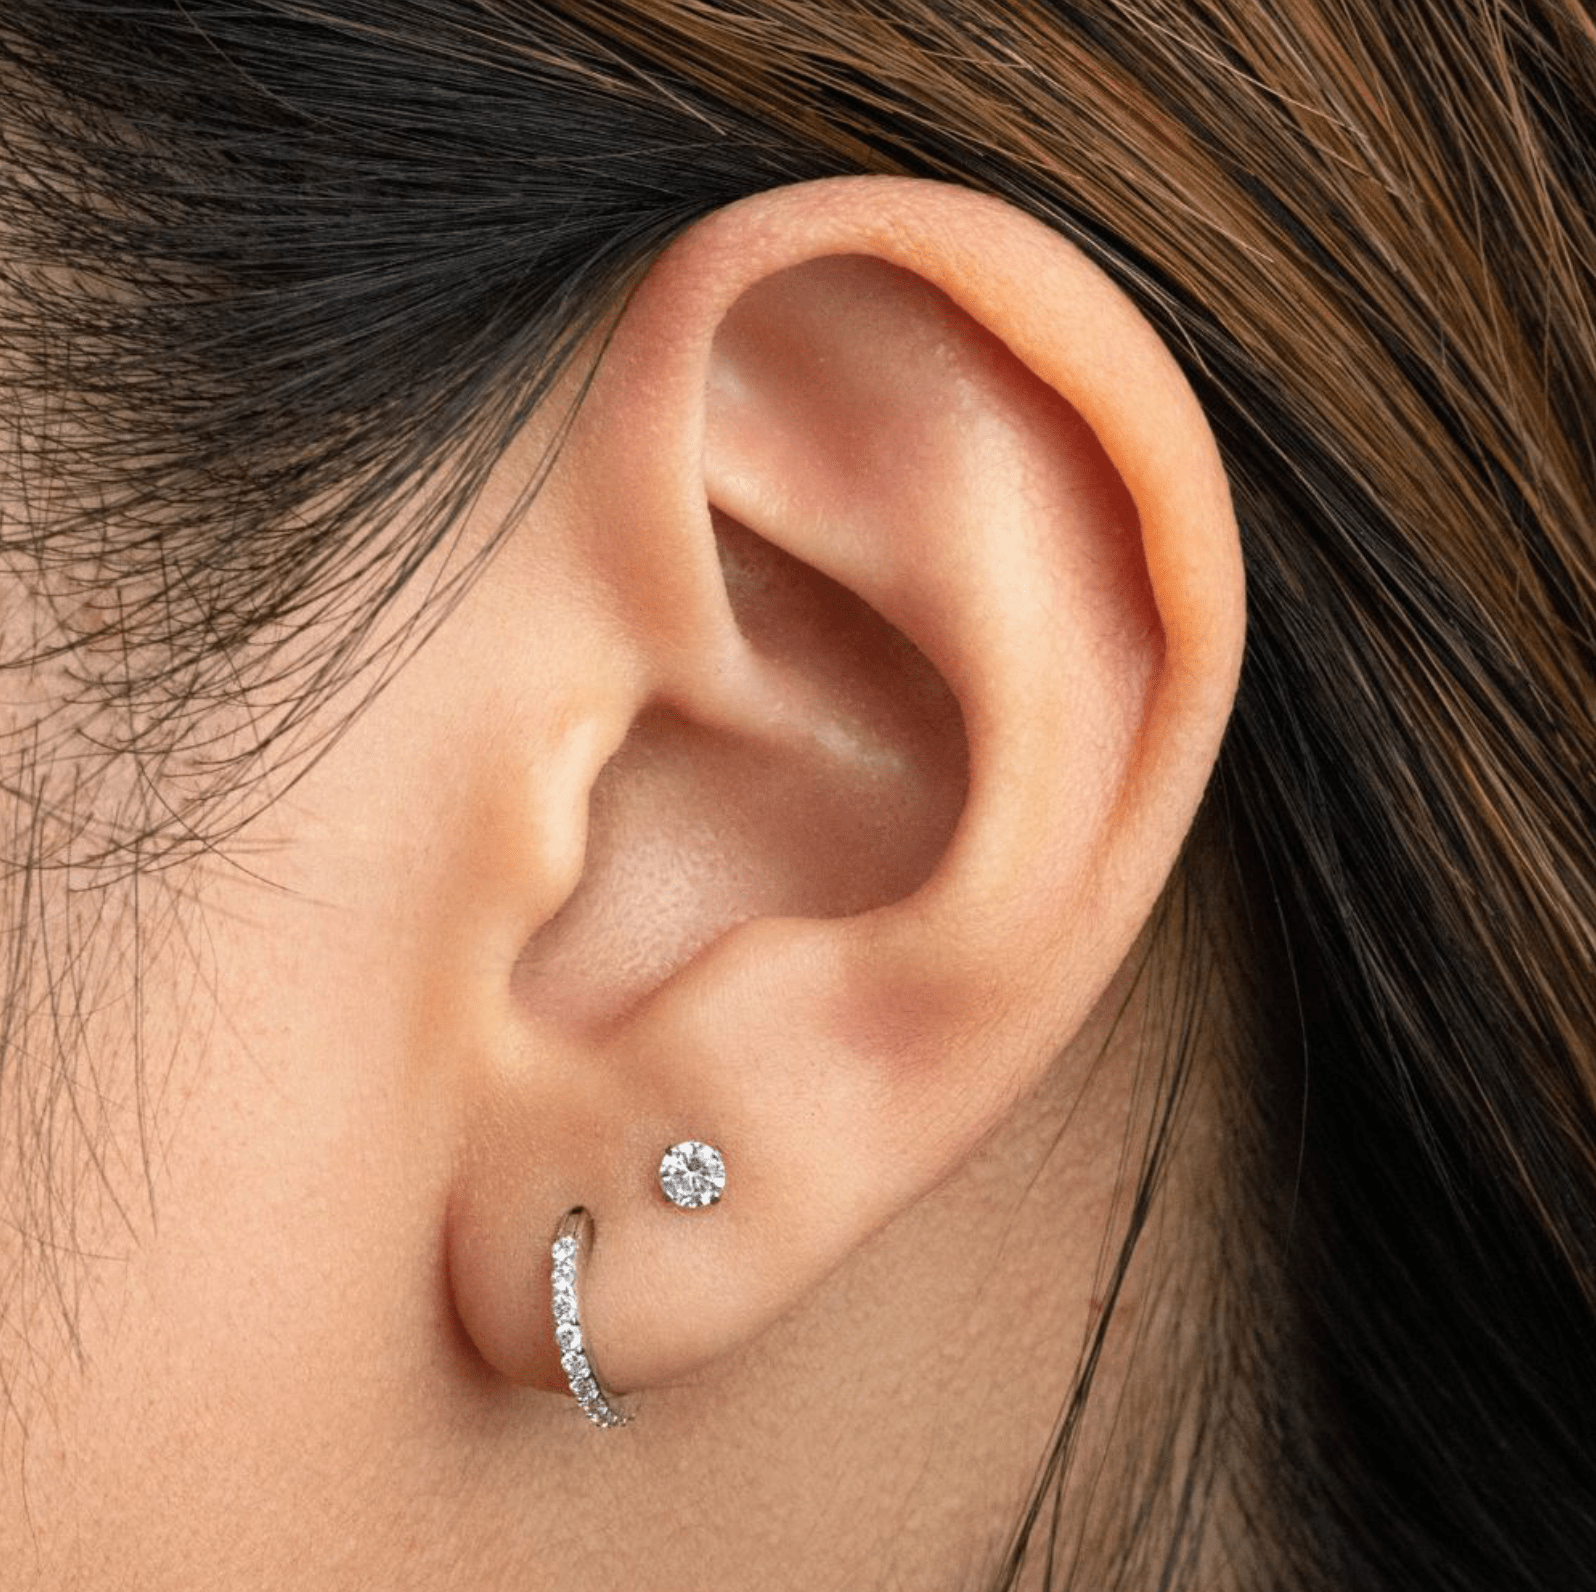 Single Ear Lobe Piercing - Earring - Lulu Ave Body Jewelery